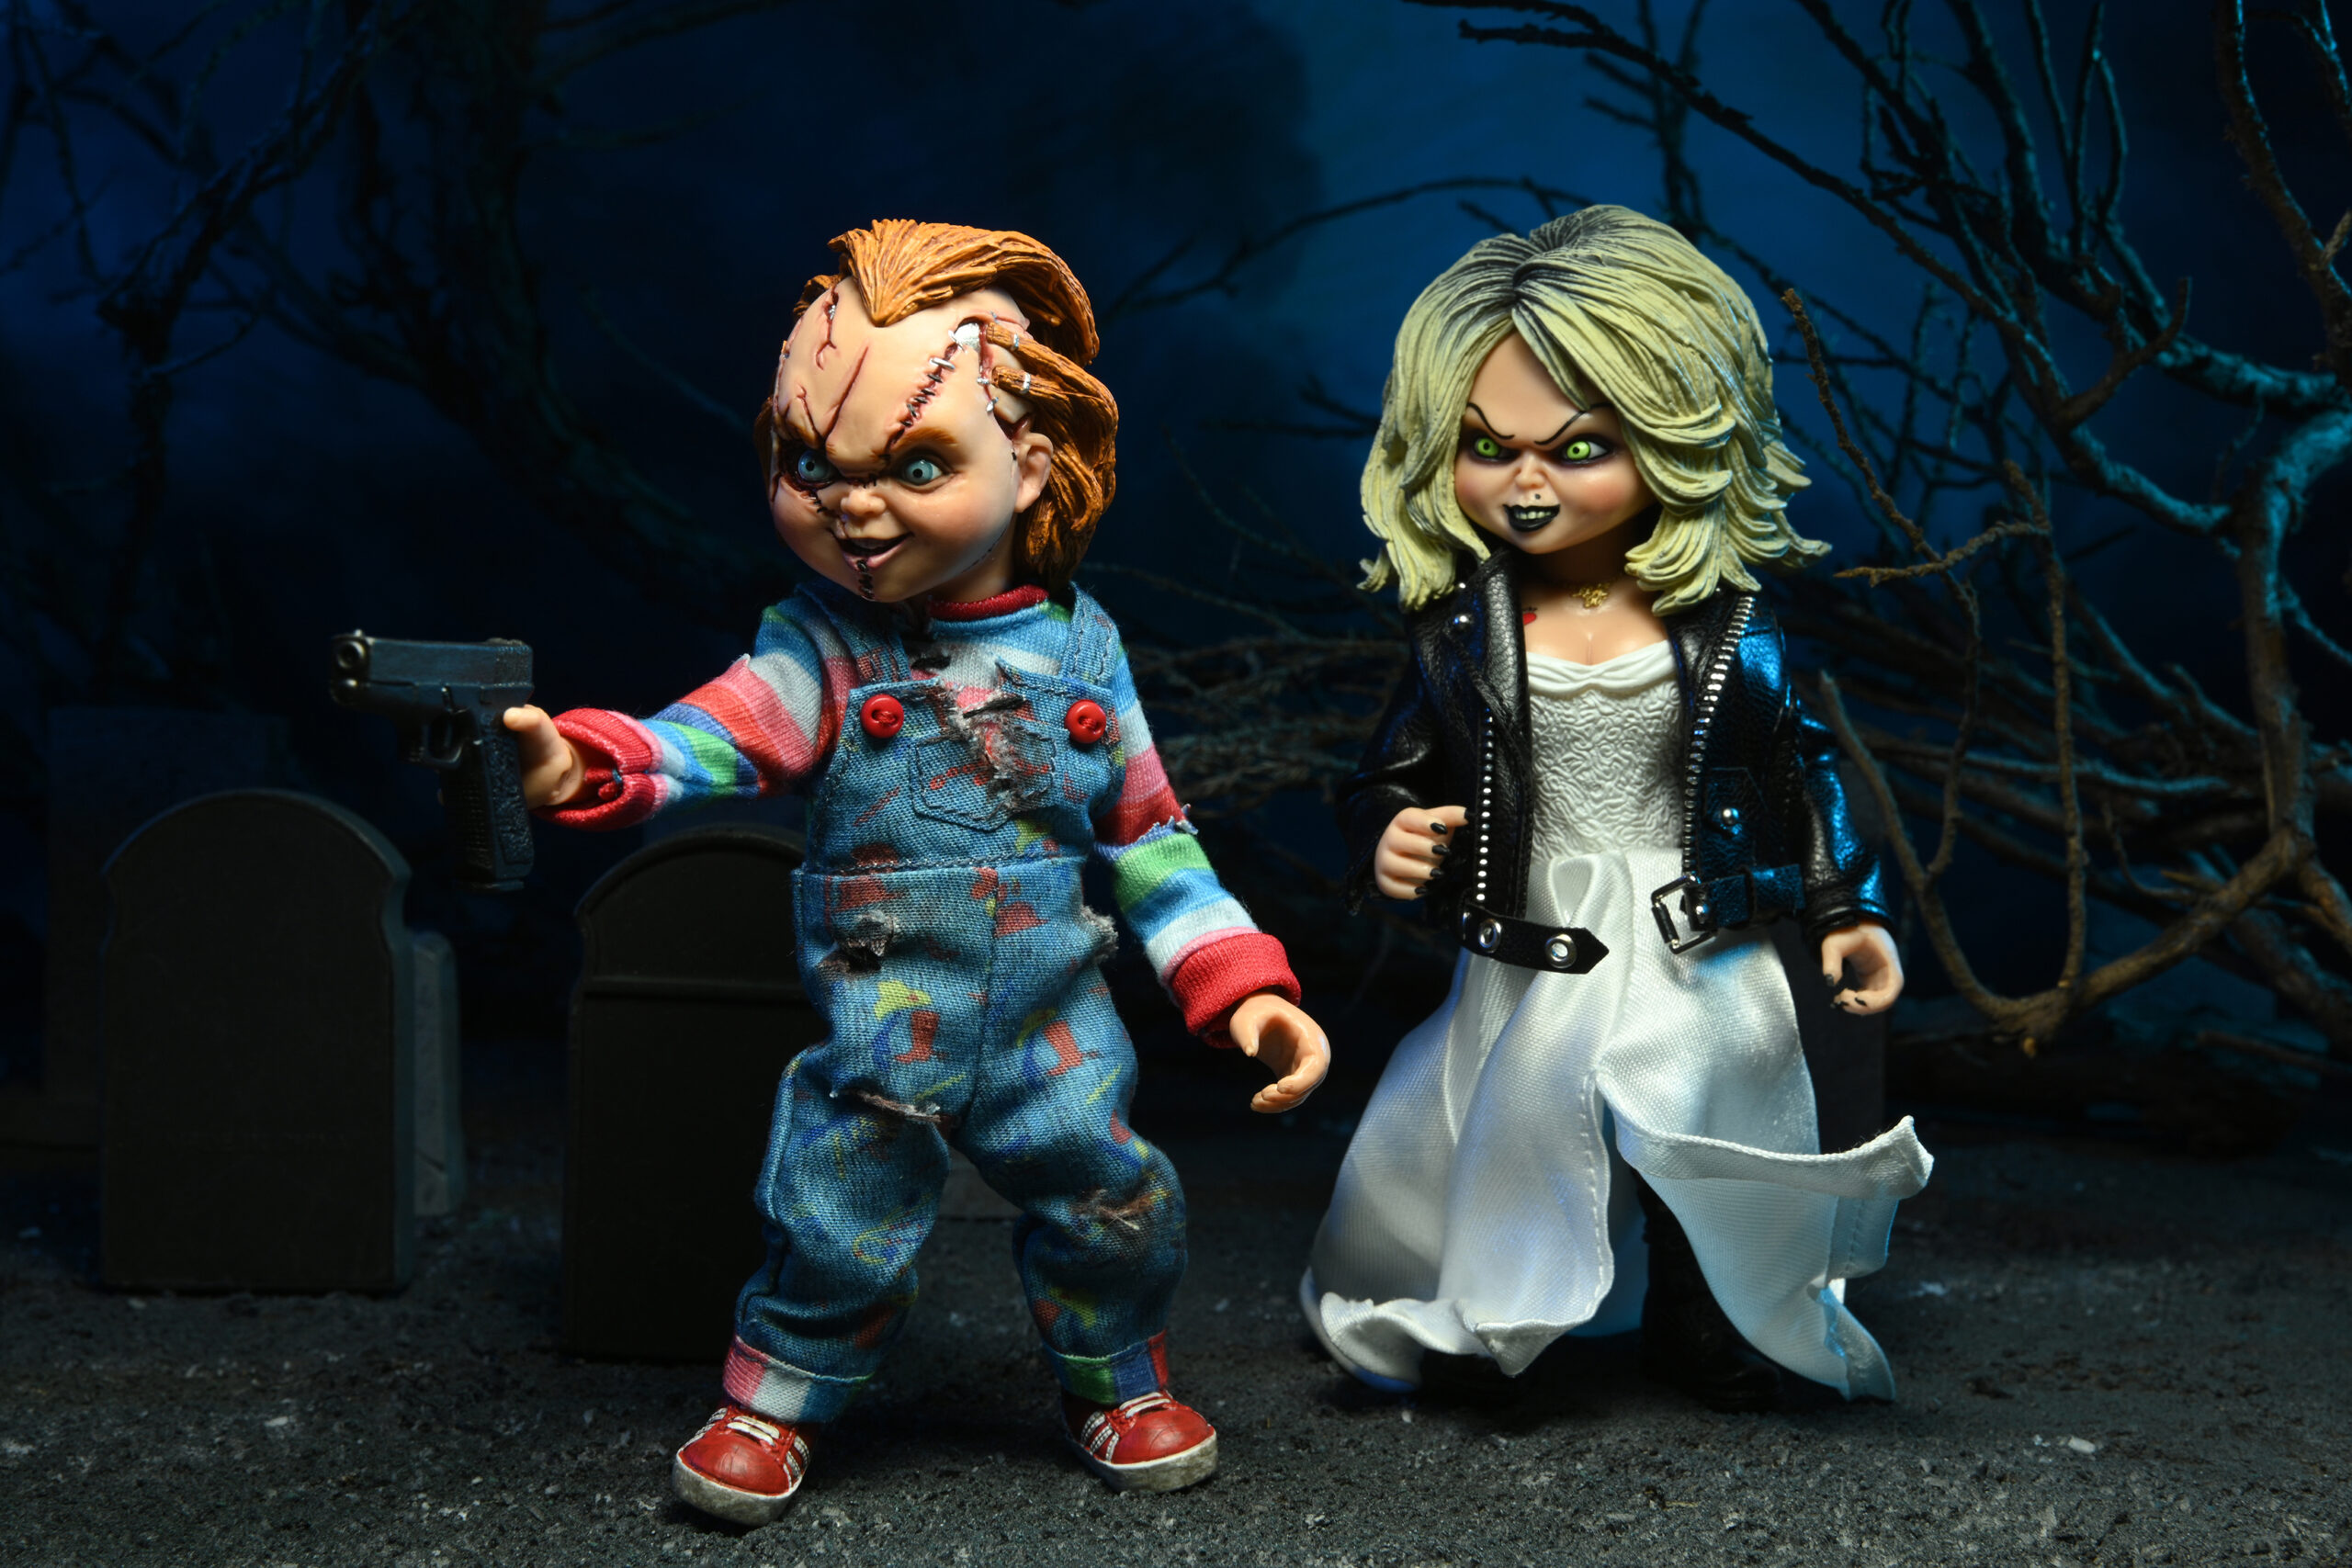 Кукла чаки невеста чаки. Фигурка Chucky and Tiffany — NECA Bride of Chucky clothed Figure 2-Pack. Кукла Тиффани невеста Чаки. Алекс Винсент проклятие Чаки. Тиффани невеста Чаки фигурка.